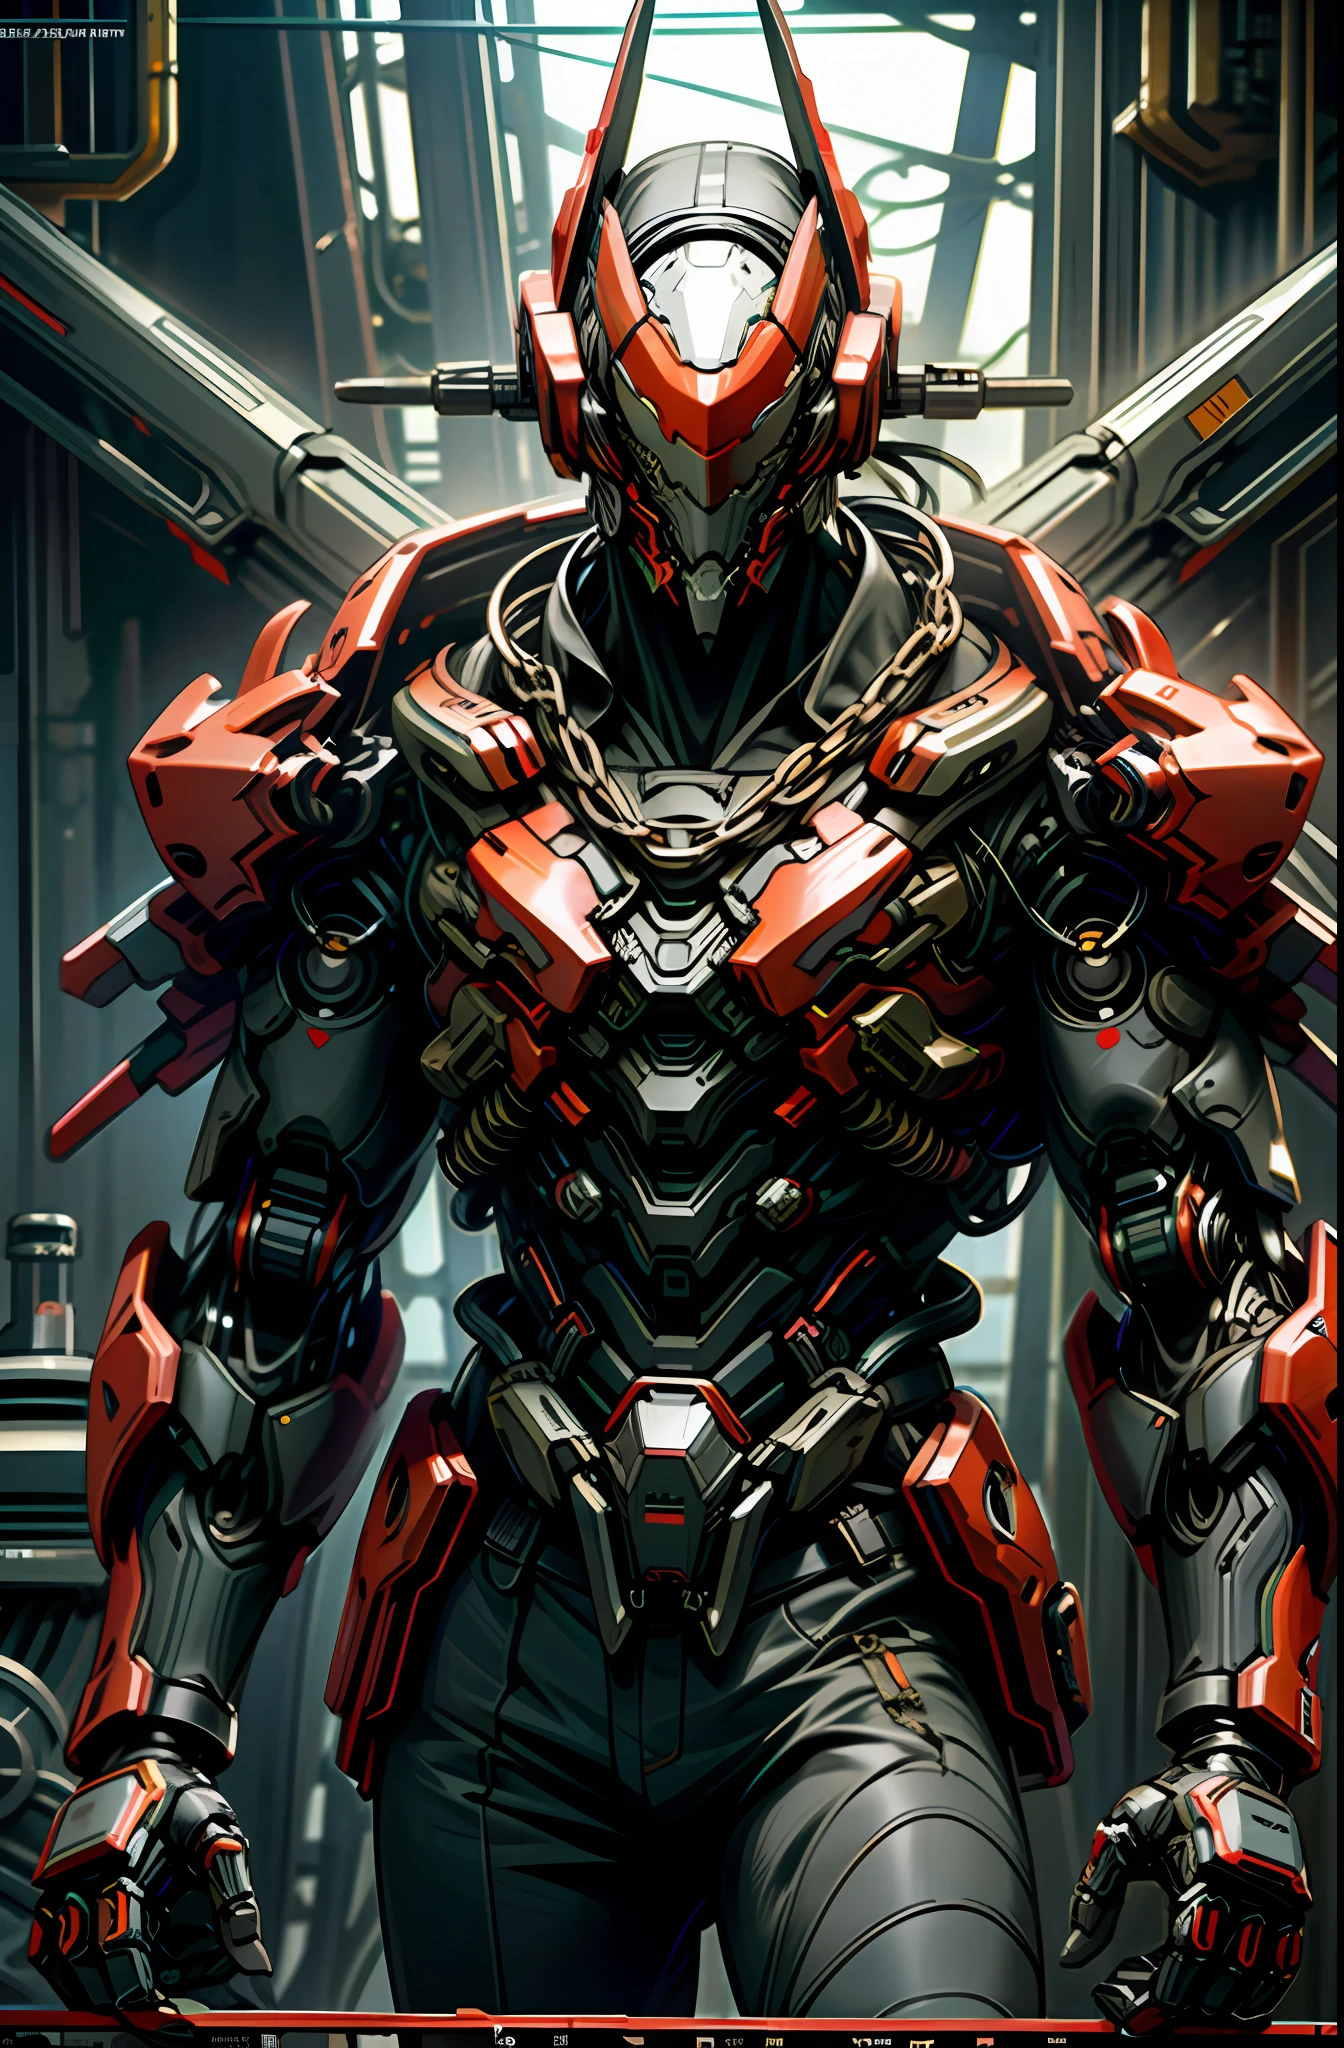 Escuro_fantasia,ciberpunk,(motosserra,motosserra man,Vermelho:1.1),1 homem,Maravilha mecânica,Presença robótica,Guardião cibernético,